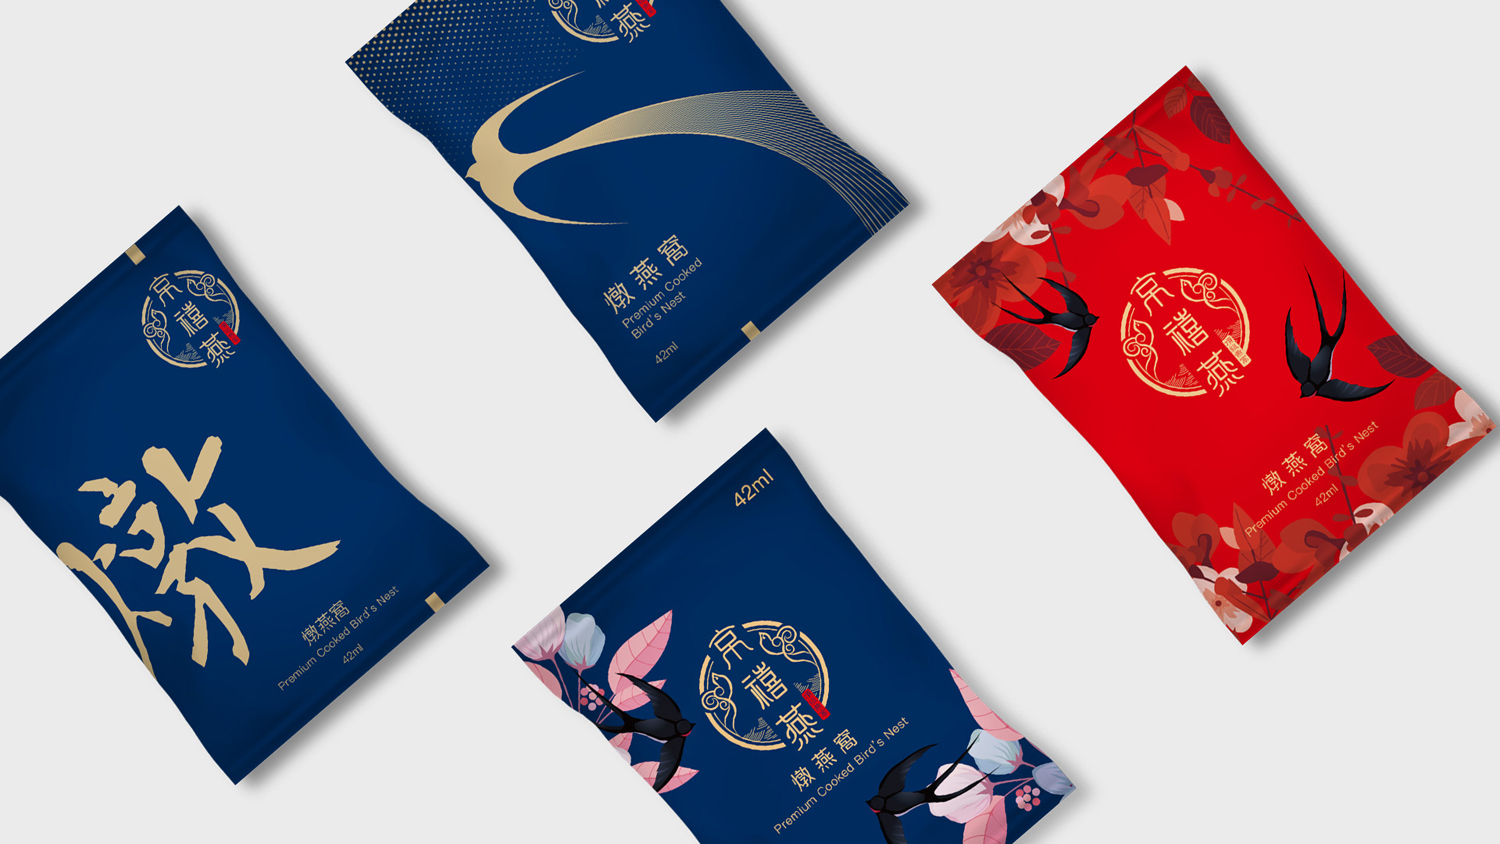 Jing Xi Yan Packaging Design